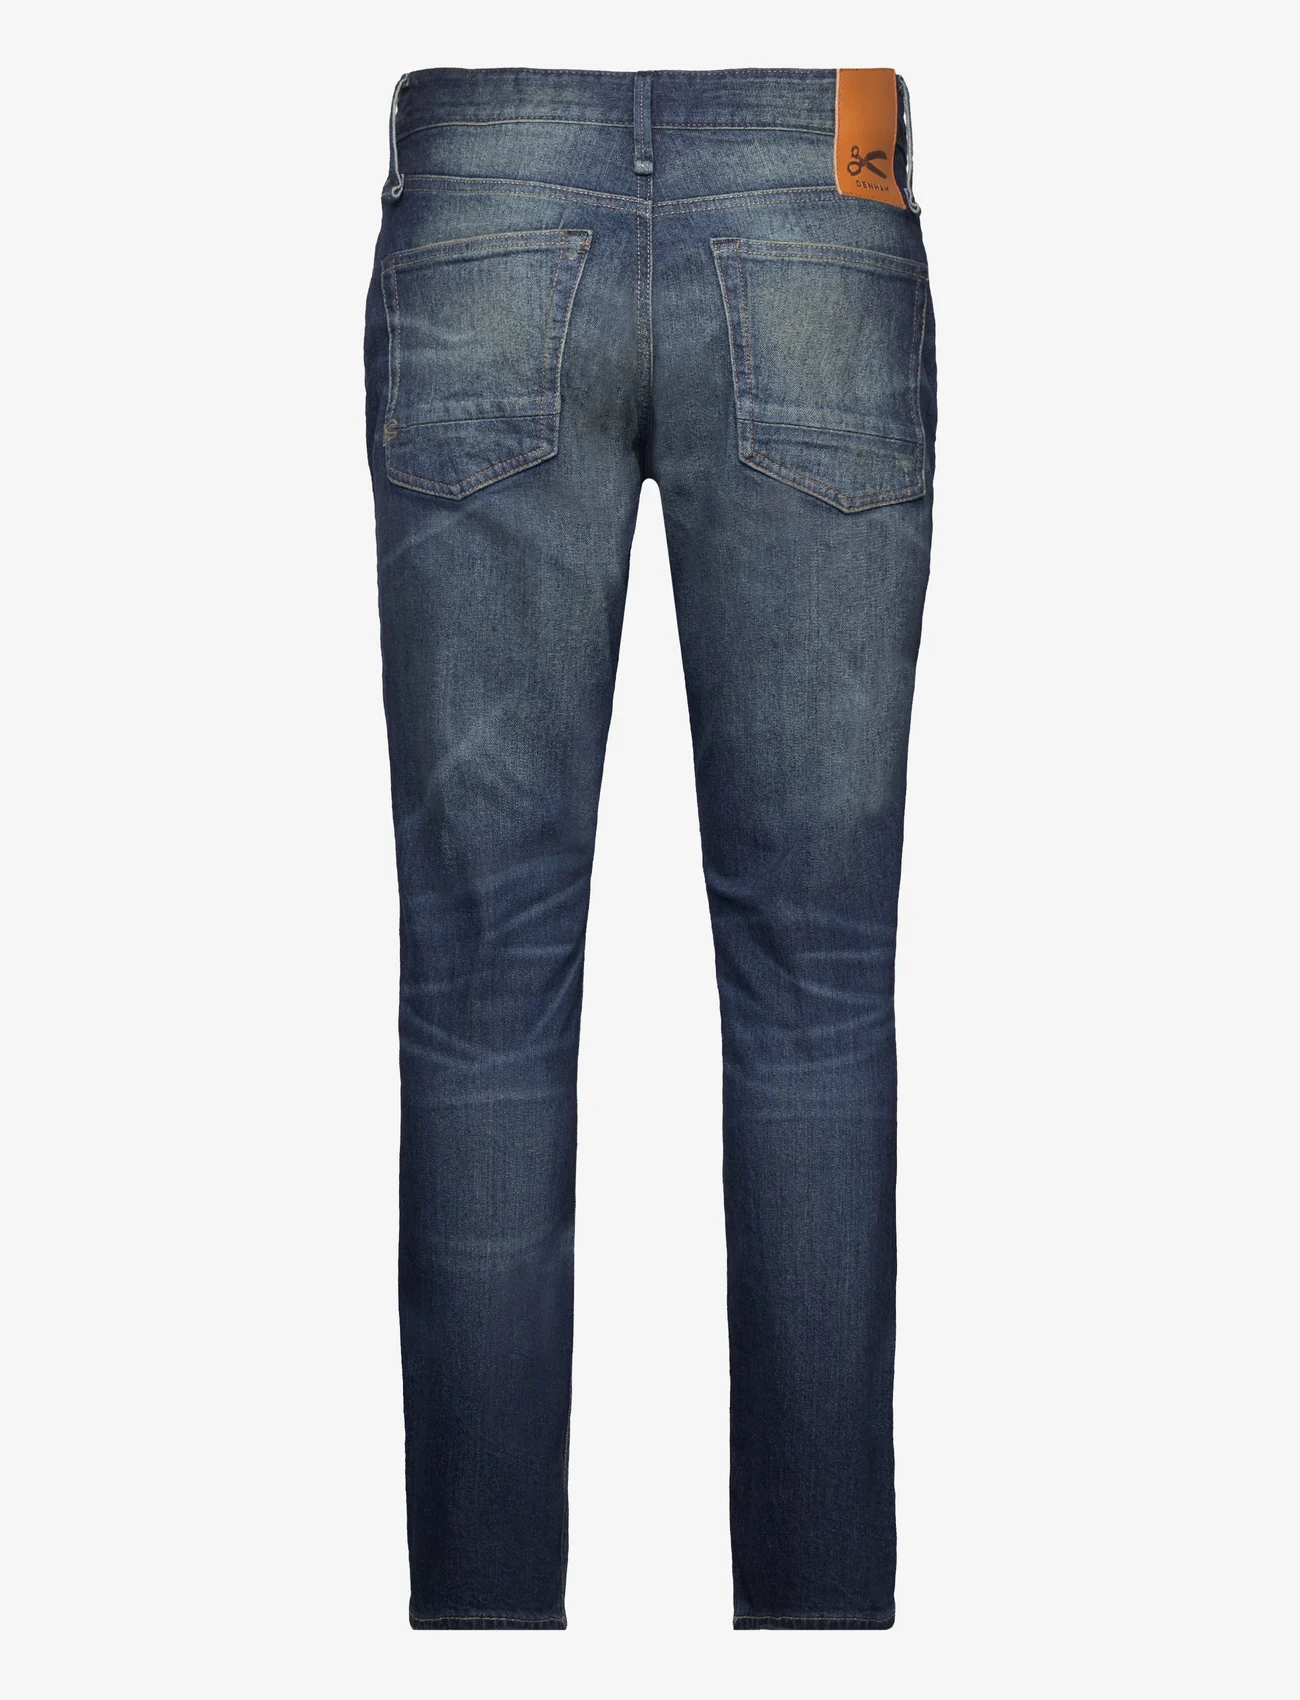 Denham - Razor - slim jeans - dark blue - 1